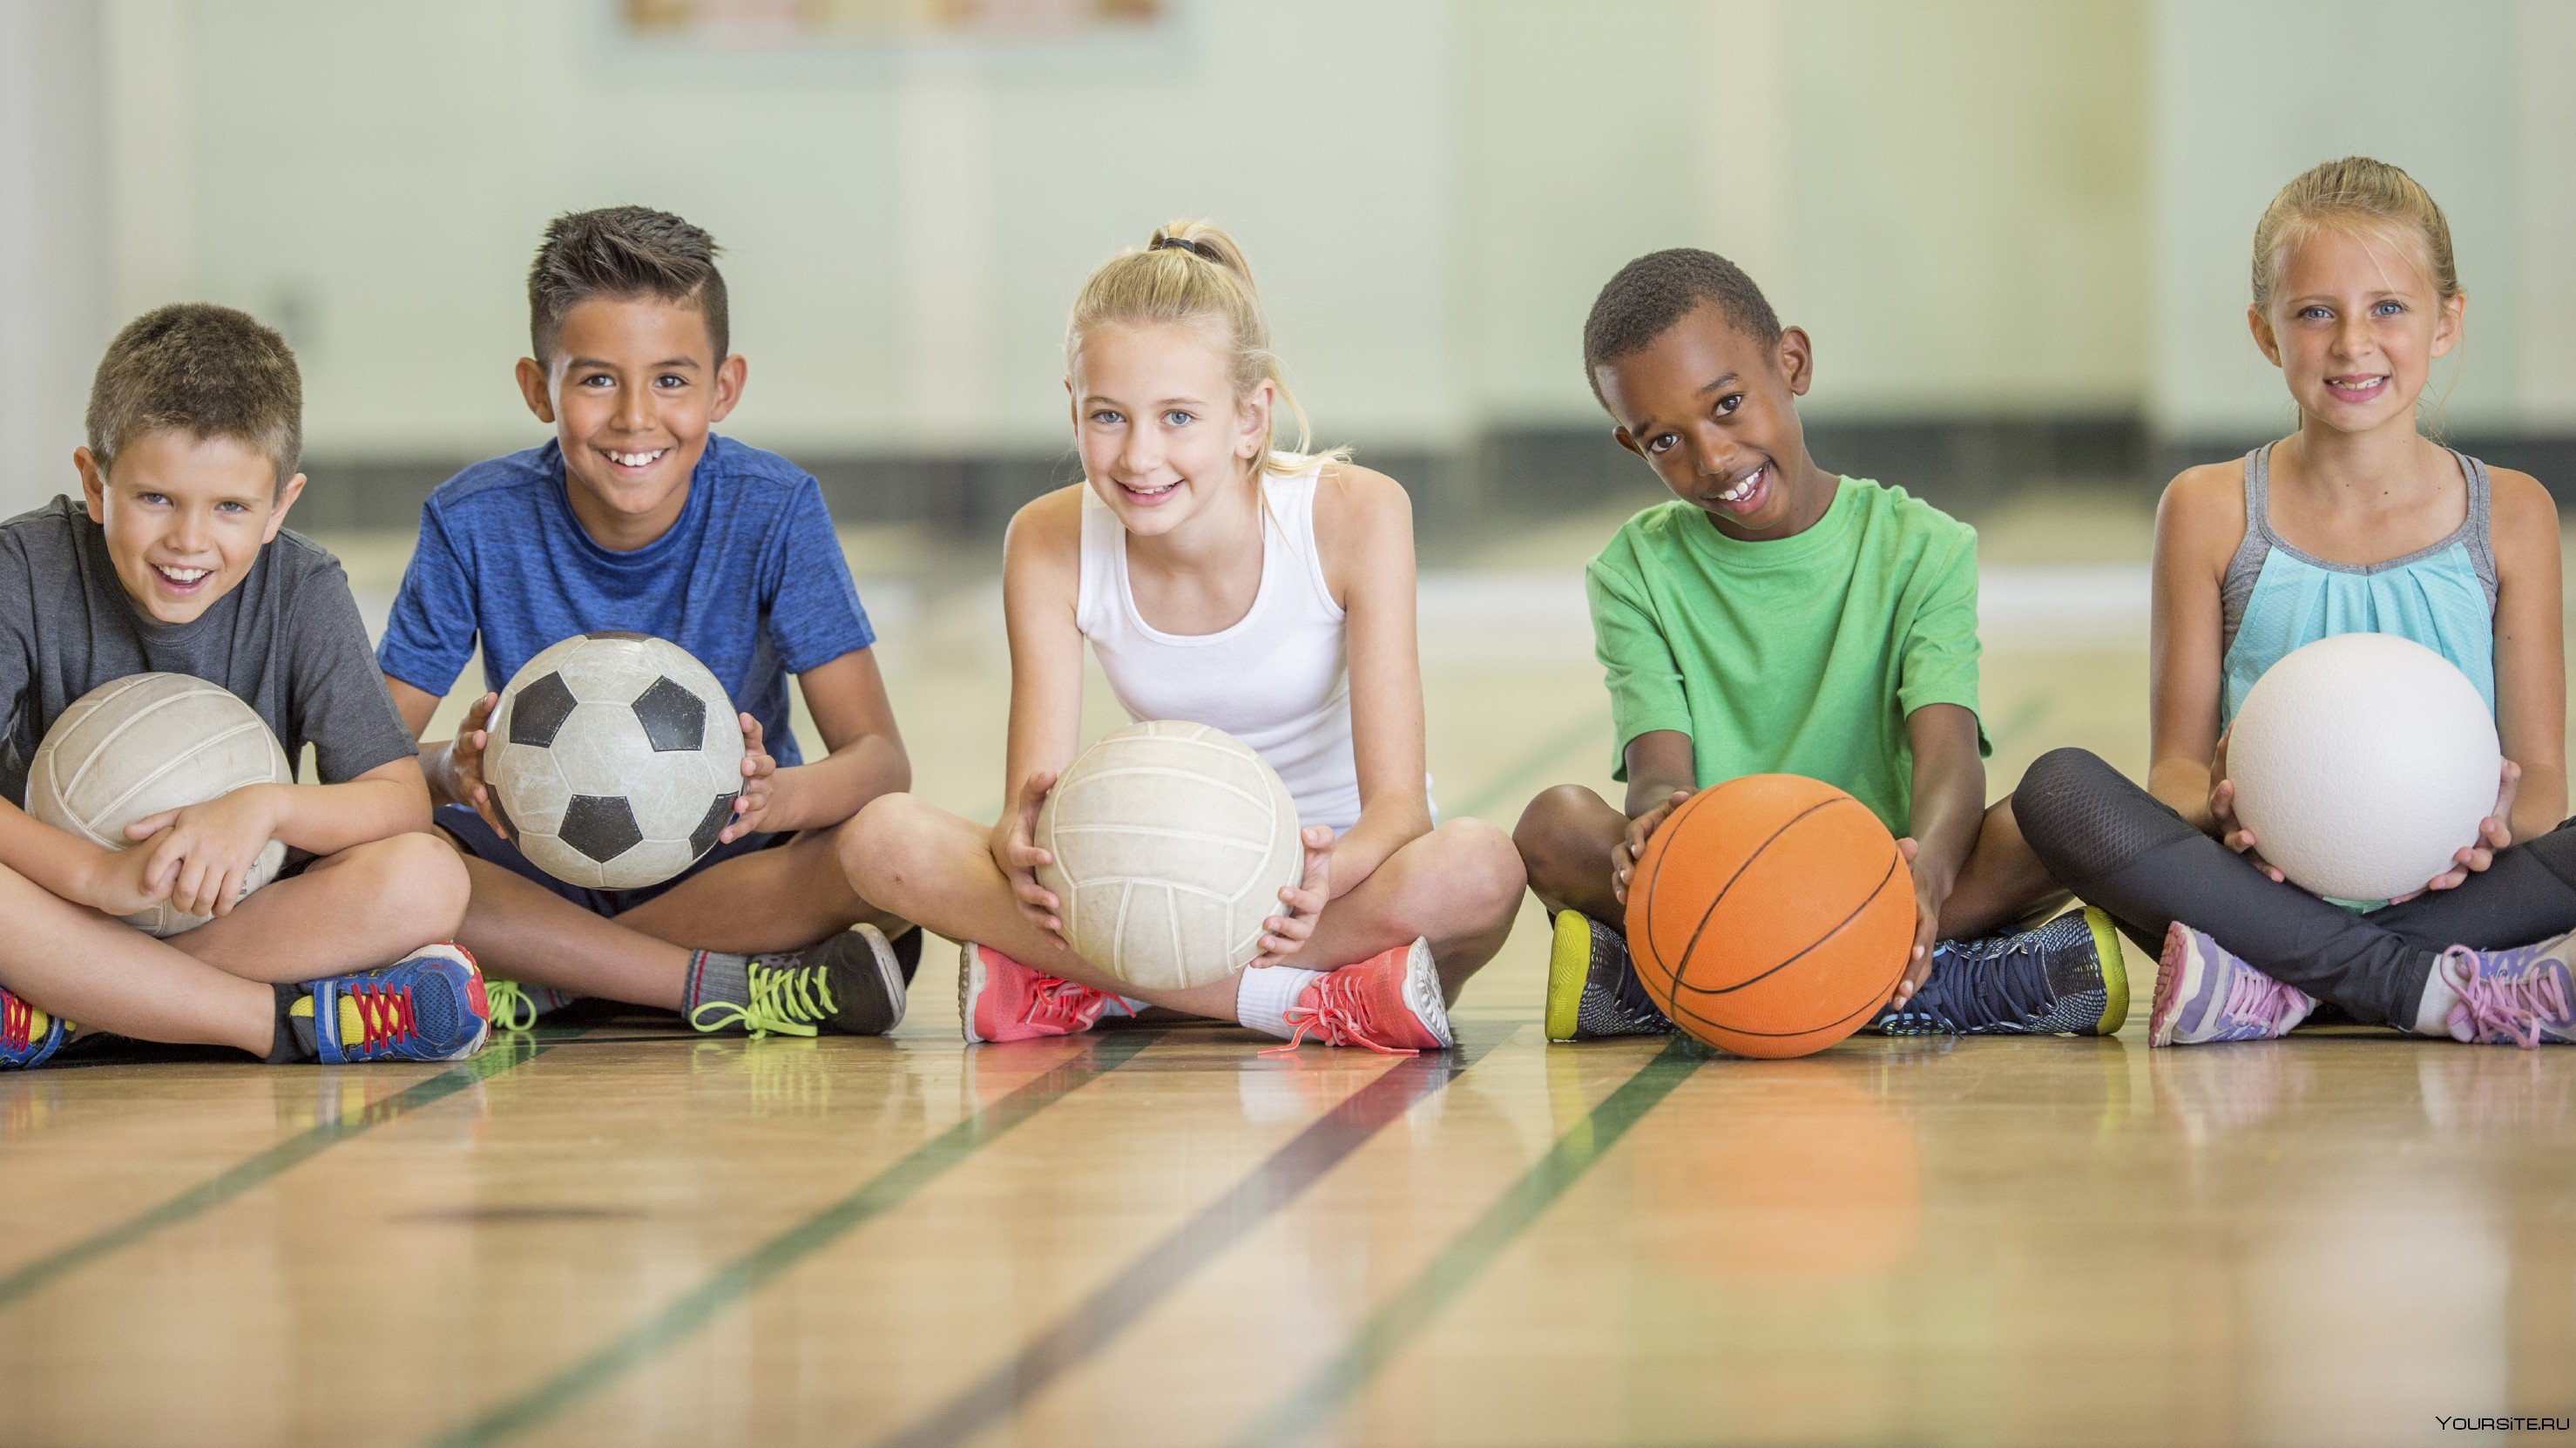 Спортивная школа возраст. Физическая культура. Детский спорт. Спортивные дети. Занятие спортом дети.